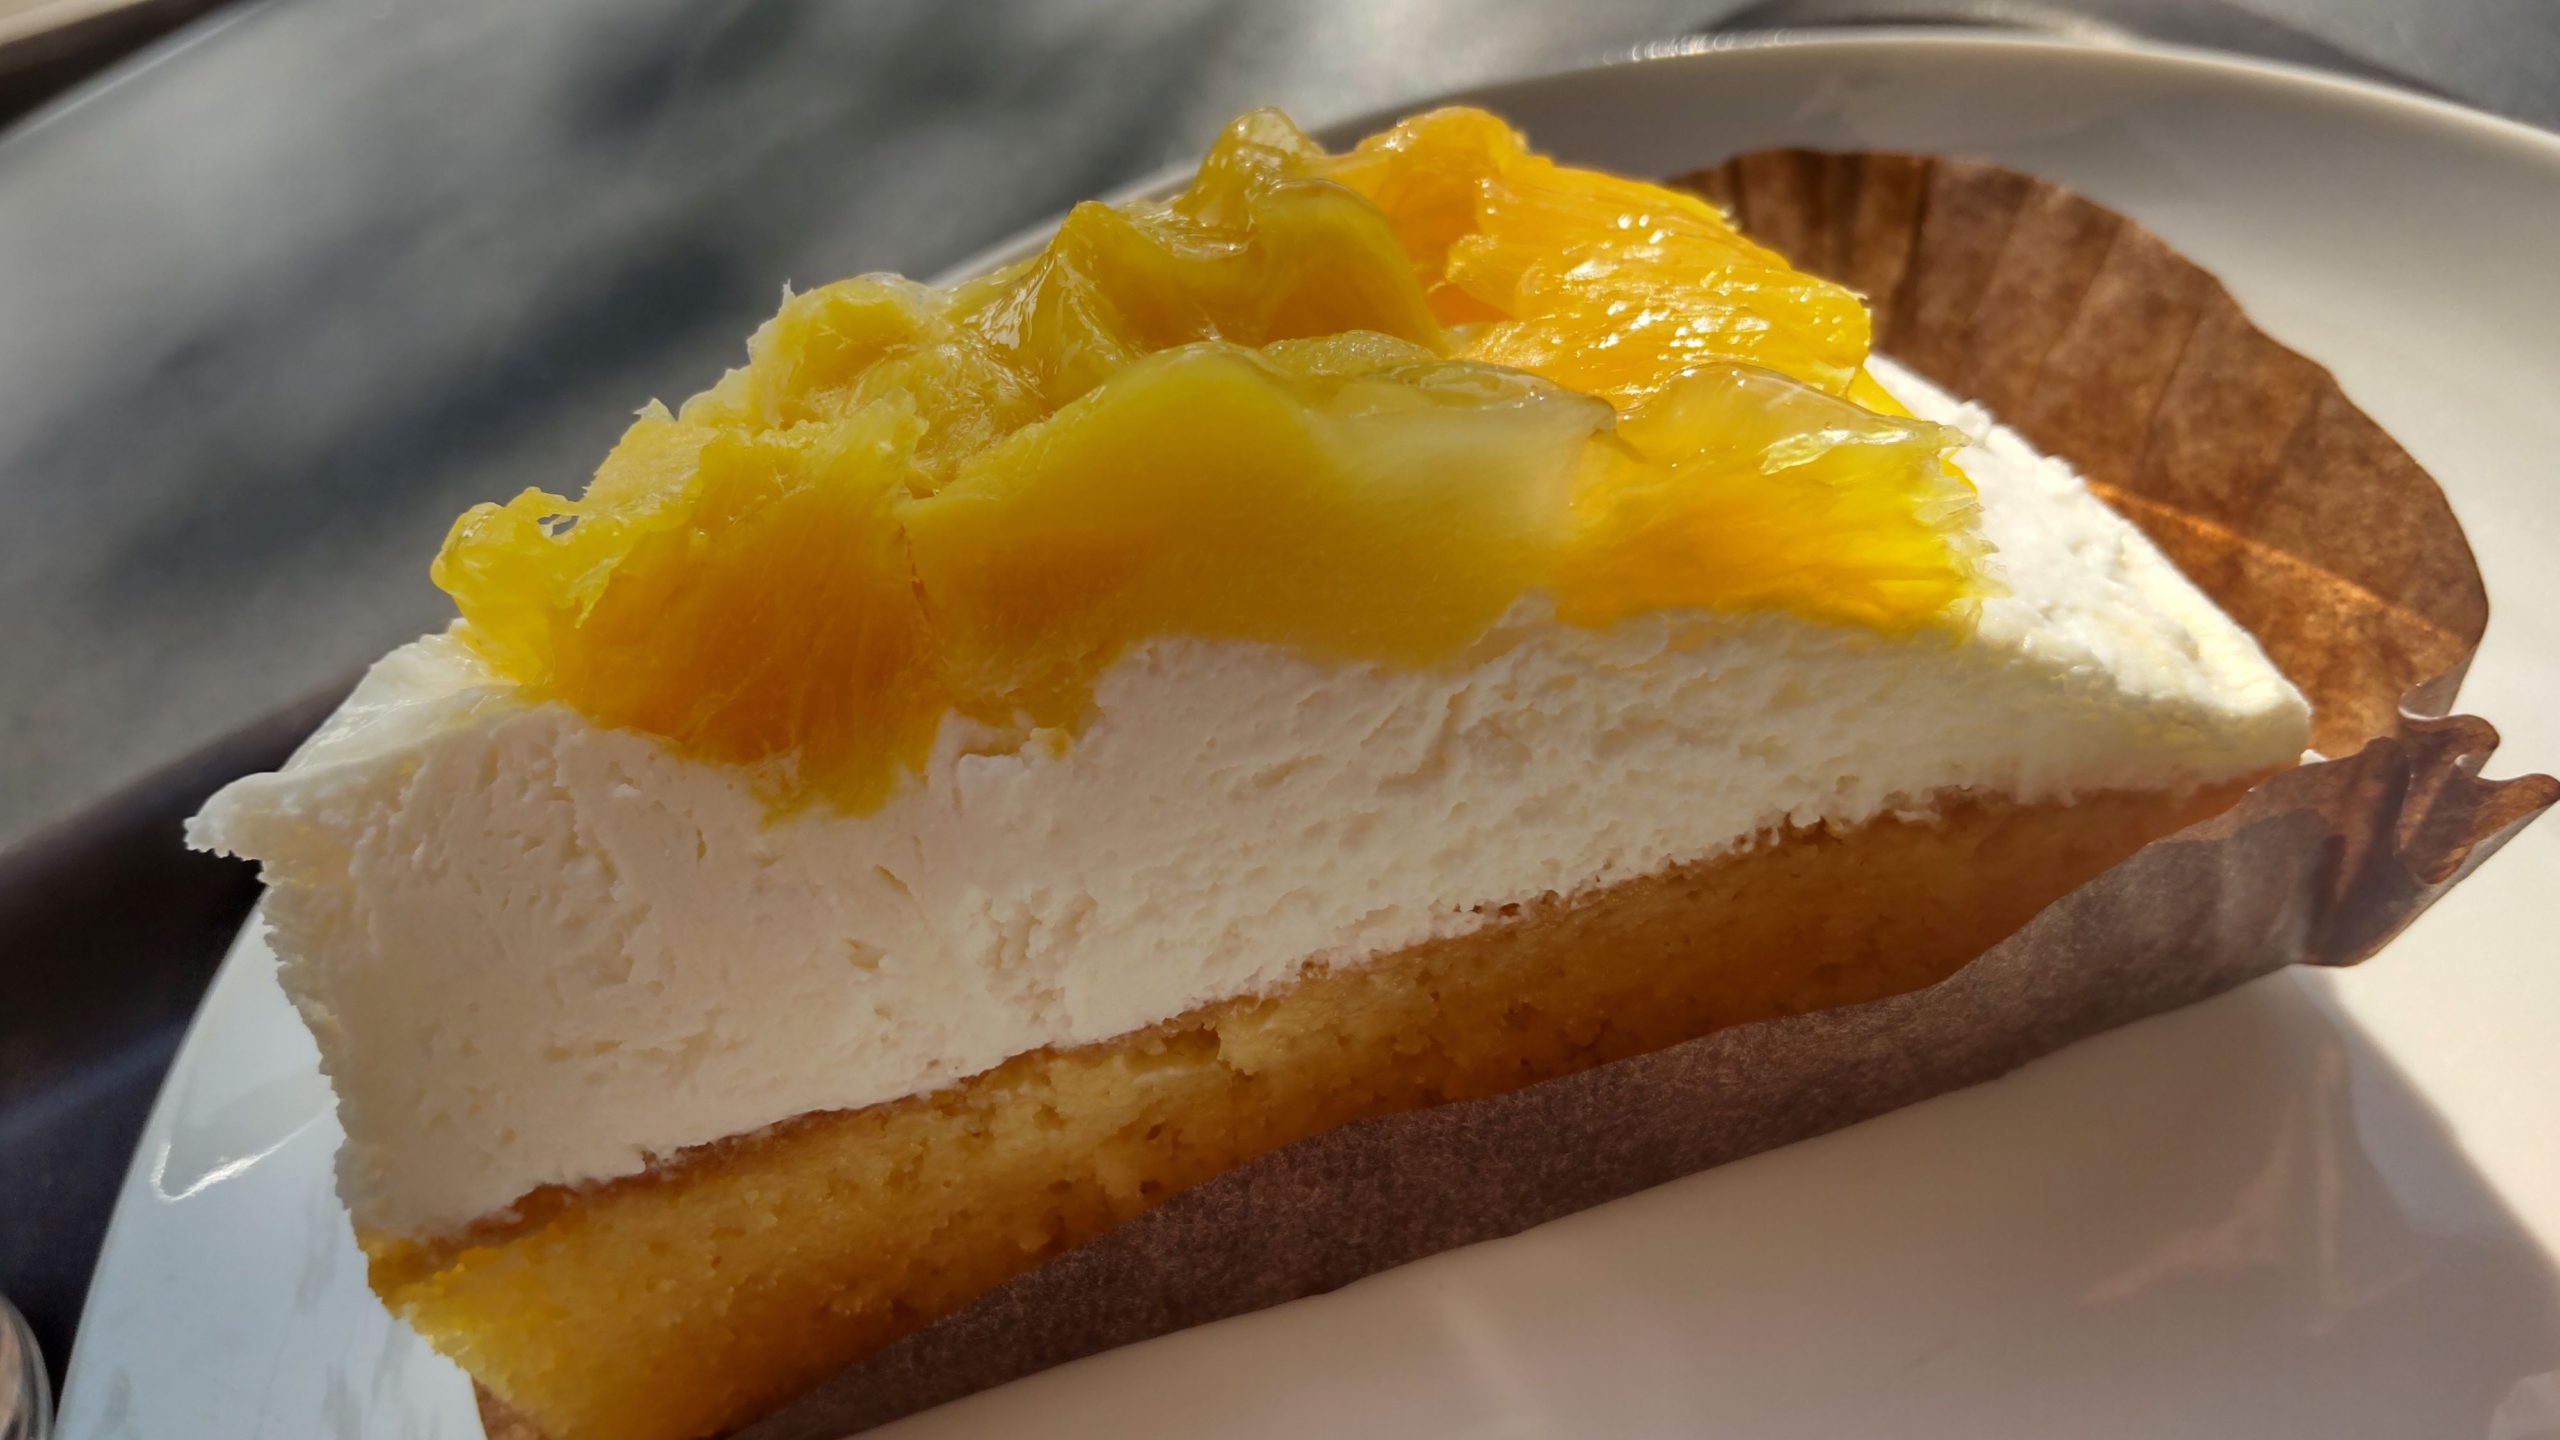 スタバ オレンジ&マンゴーのケーキ